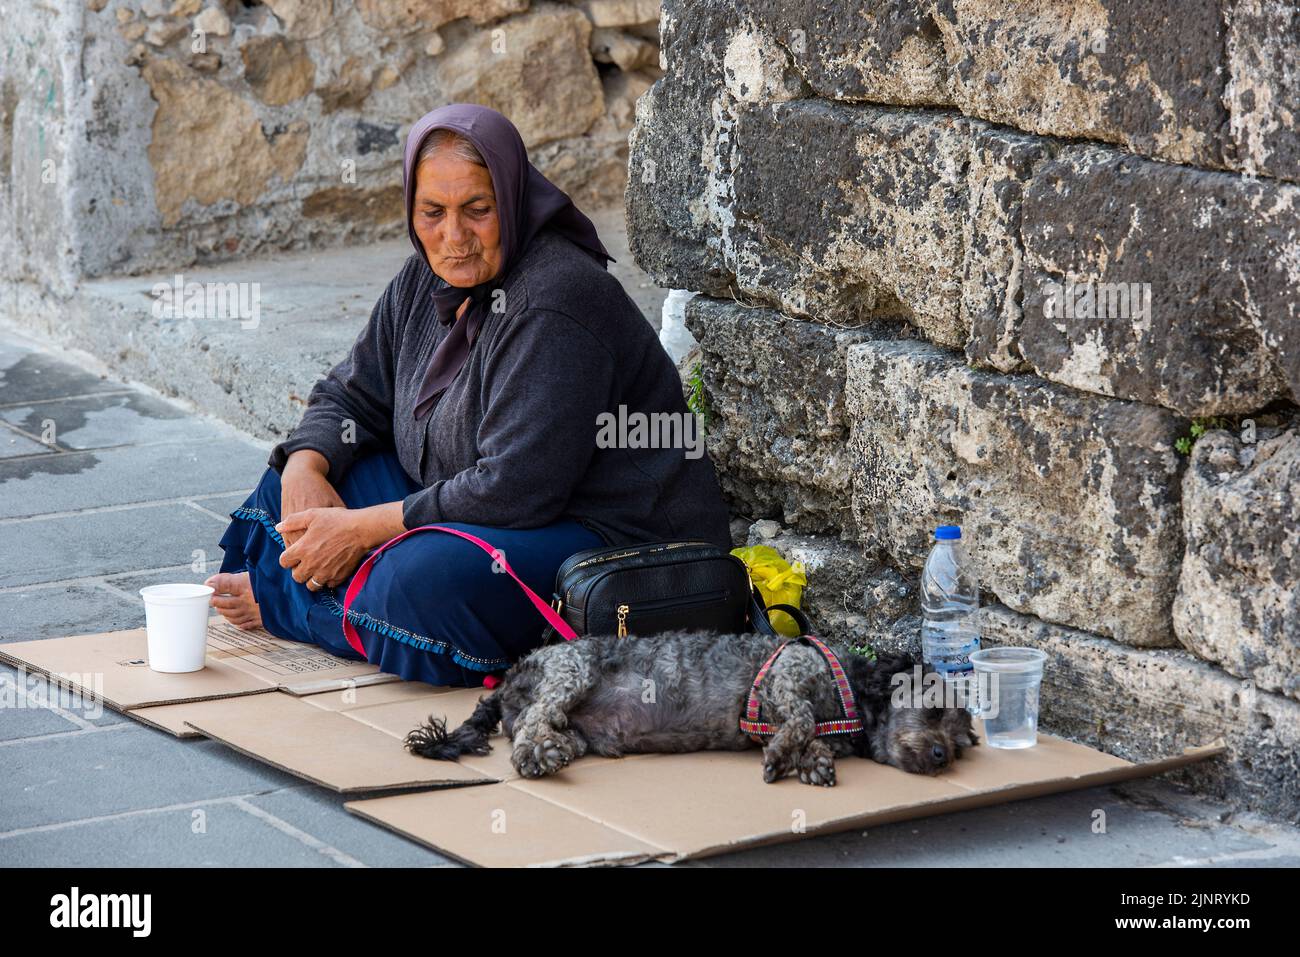 vieille dame vêtue de noir avec un chien implorant de l'argent dans les rues de chania sur l'île grecque de crète, mendiant femme dans les rues avec son chien Banque D'Images